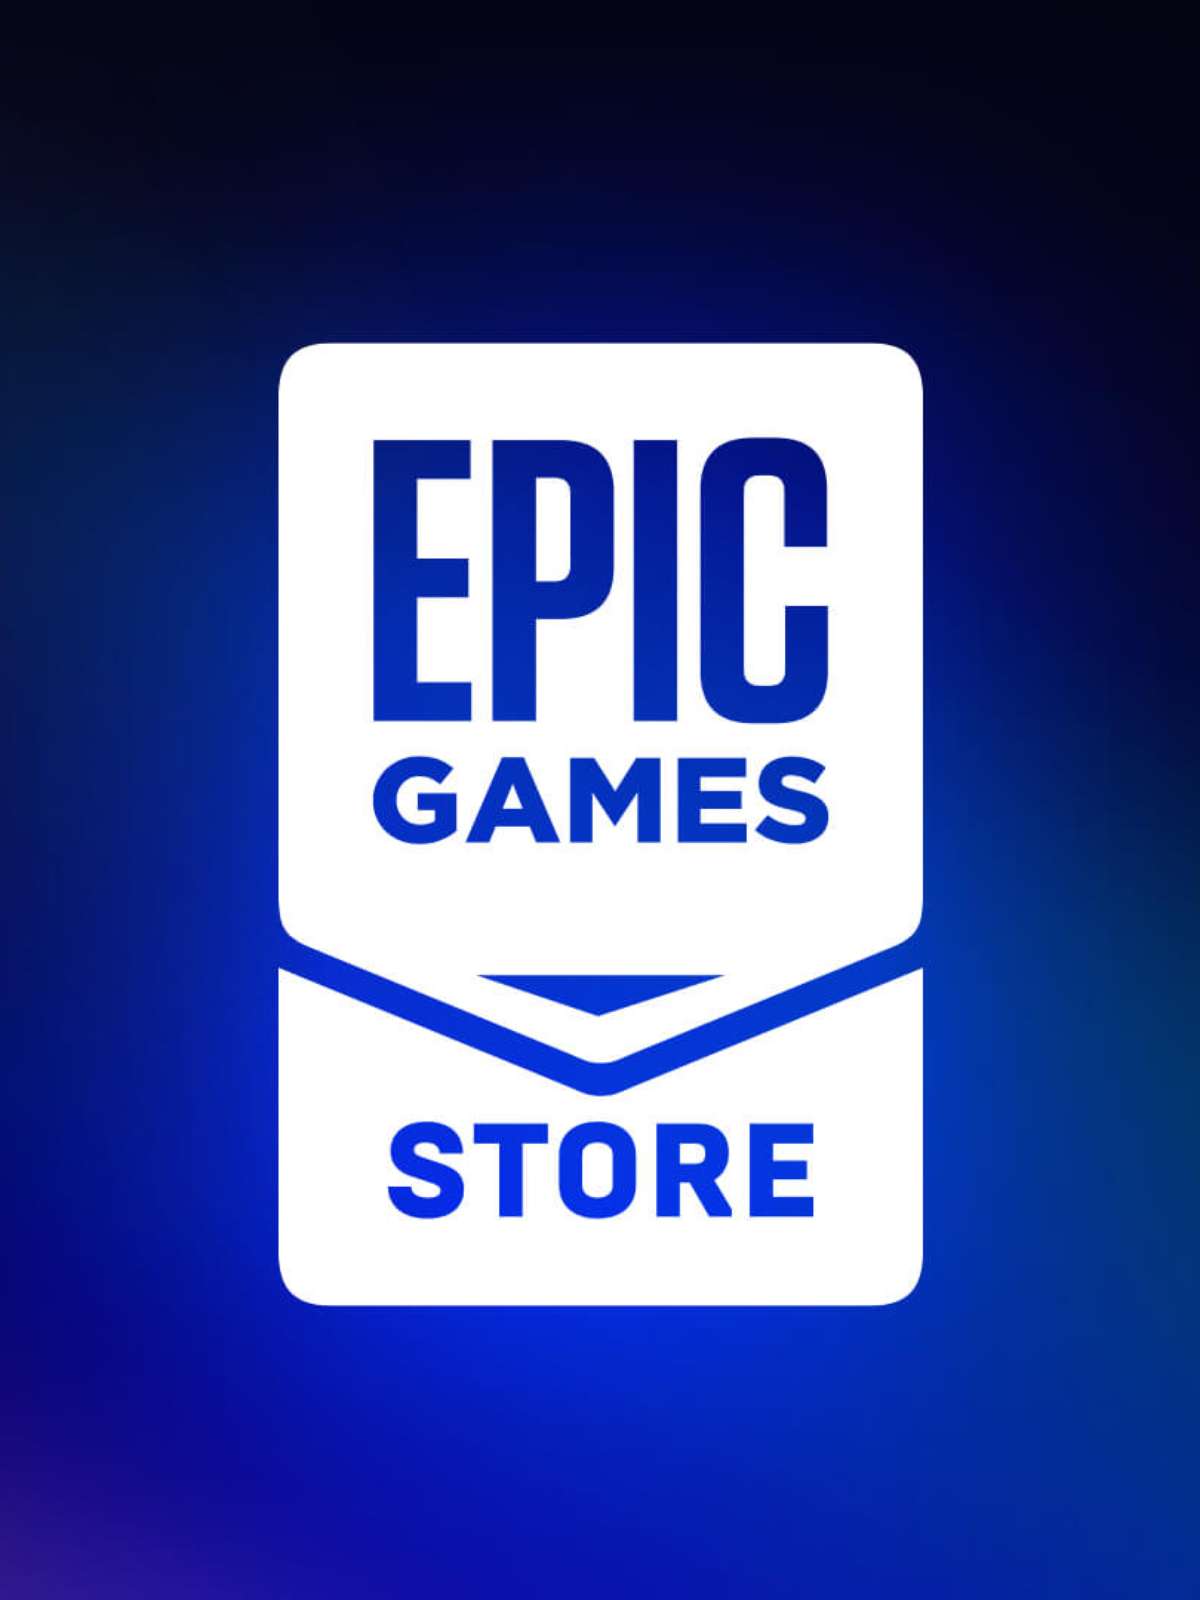 Epic Games libera dois novos jogos grátis nesta quinta-feira (28) ******  Nesta quinta-feira (28), a Epic Games oferece dois novos jogos grátis aos  seus usuários: Soulstice e Model Builder. Diferente dos carismáticos